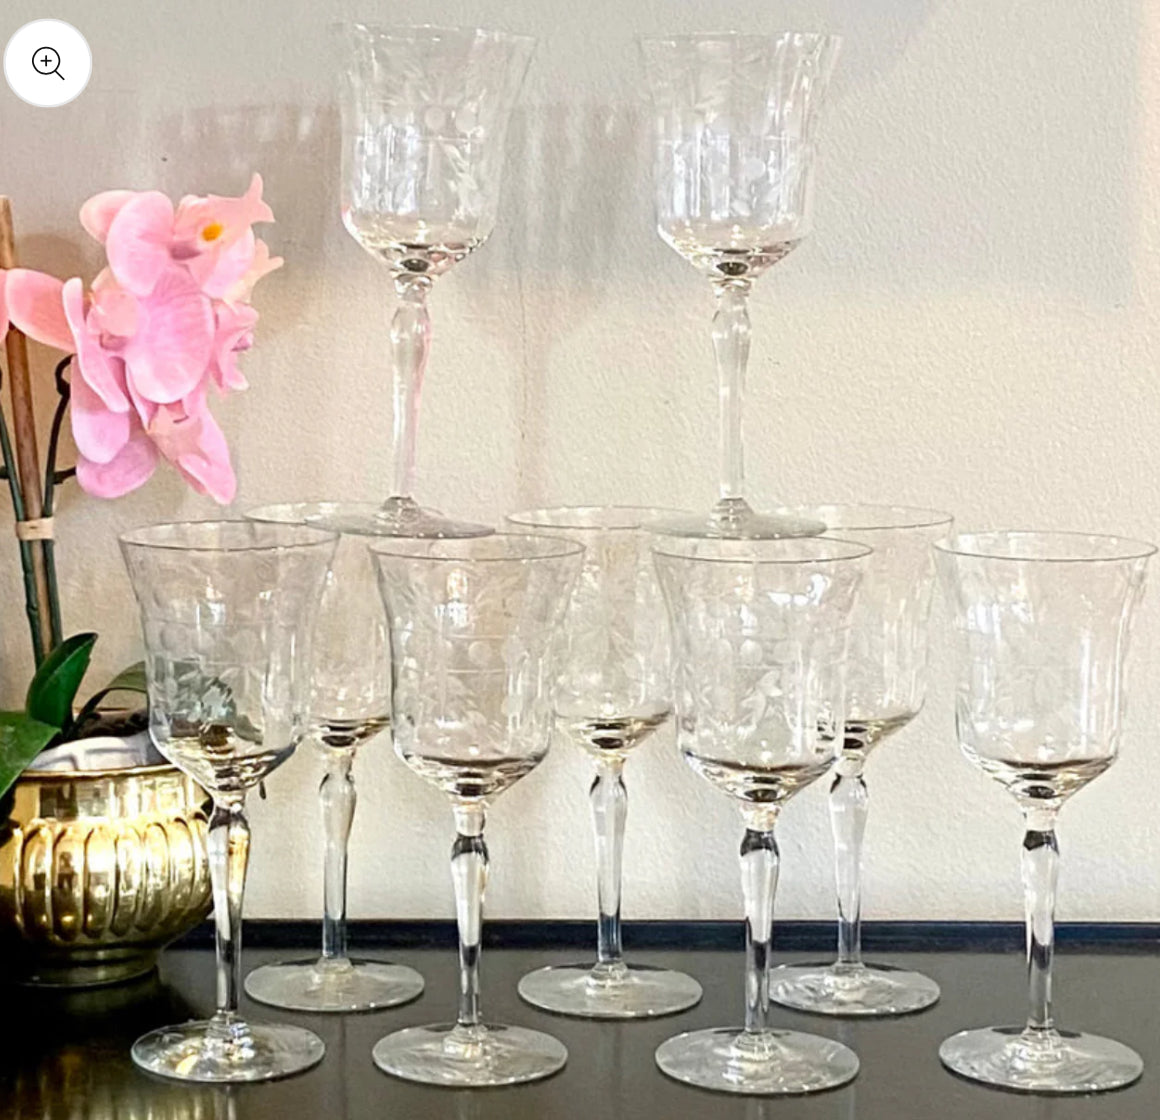 Set of 8 sparkling vintage etched crystal wine glasses stem ware.